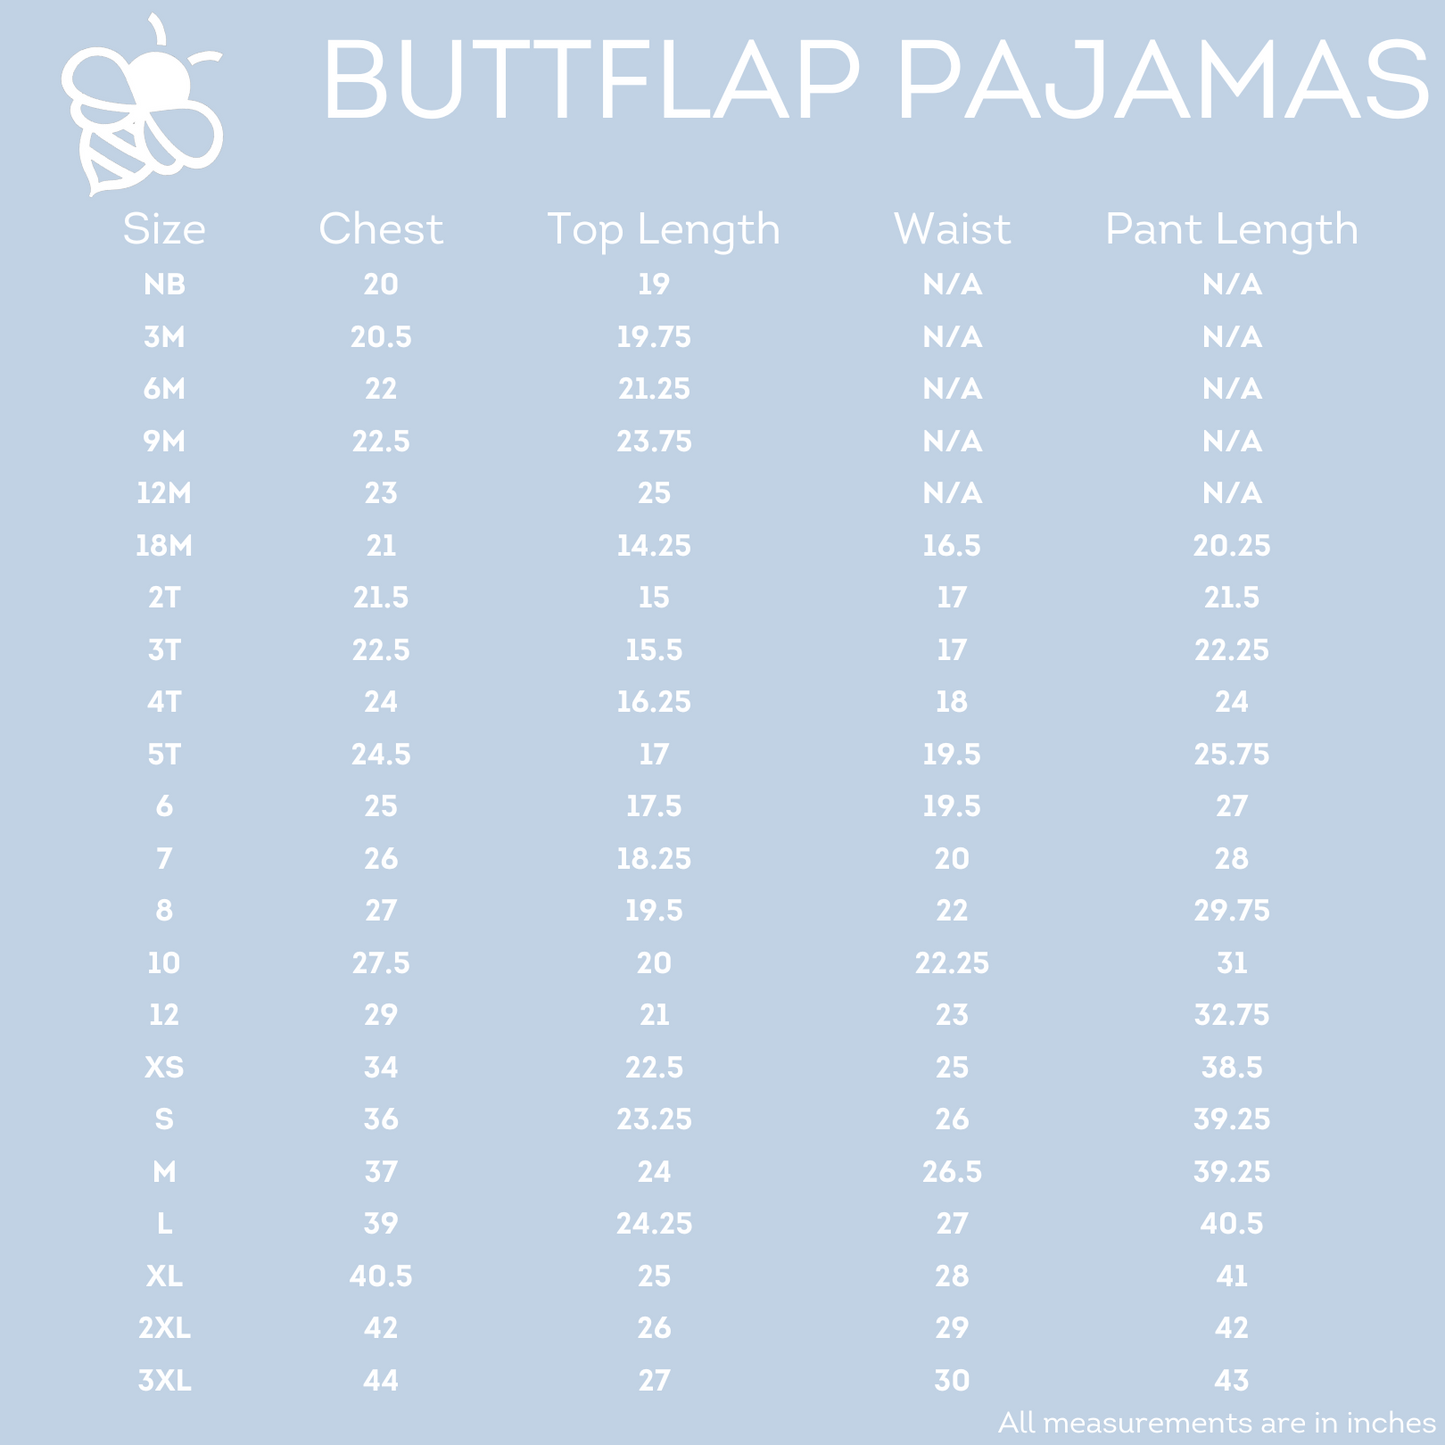 Buttflap Pajamas - Police